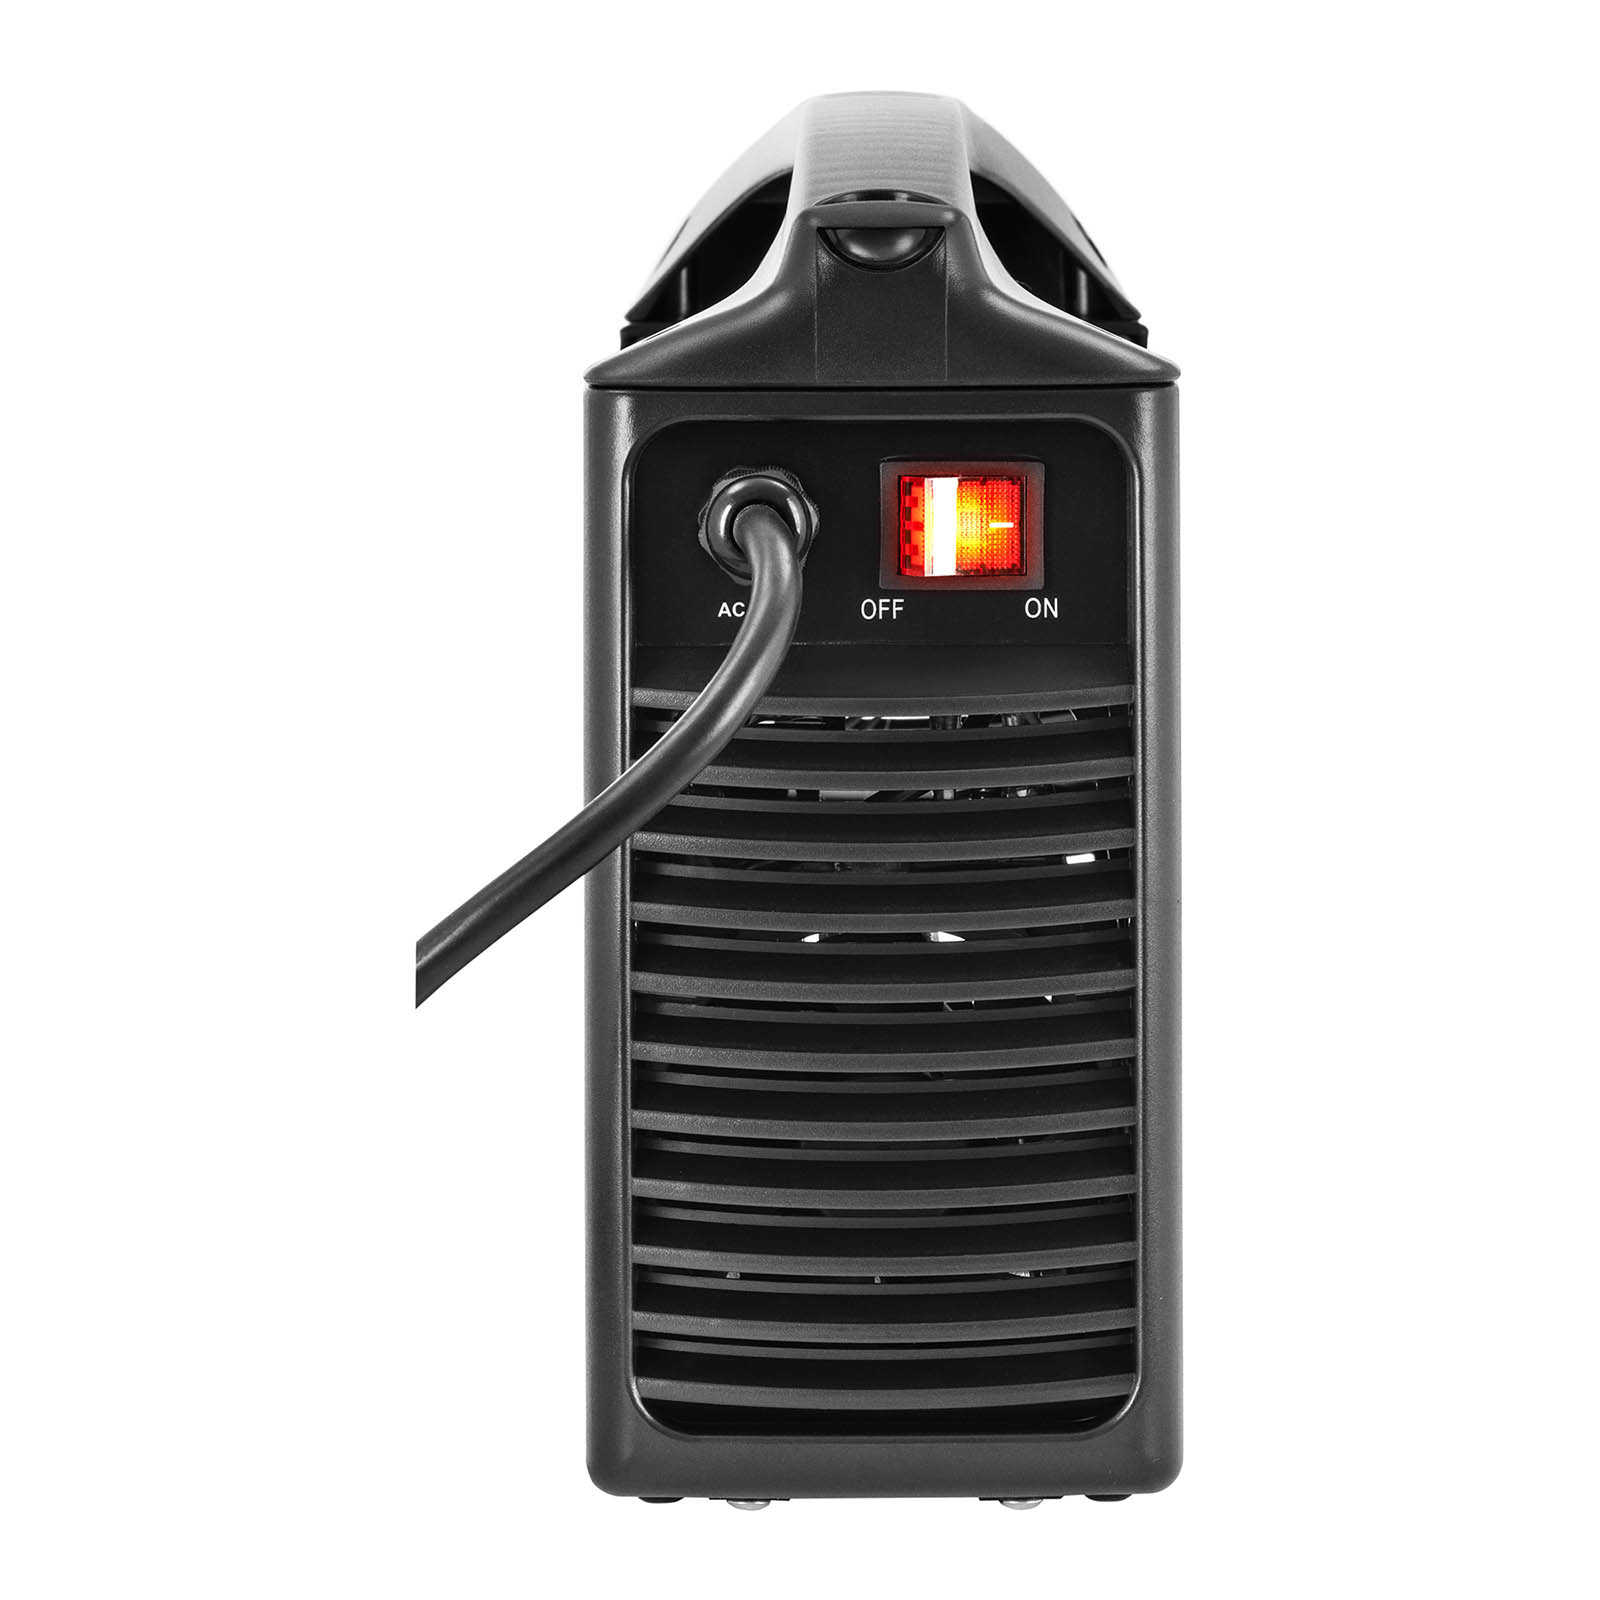 Set de soldadura Equipo de soldadura MMA - 180 A - Hot Start - IGBT + Careta de soldar – Blaster – ADVANCED SERIES